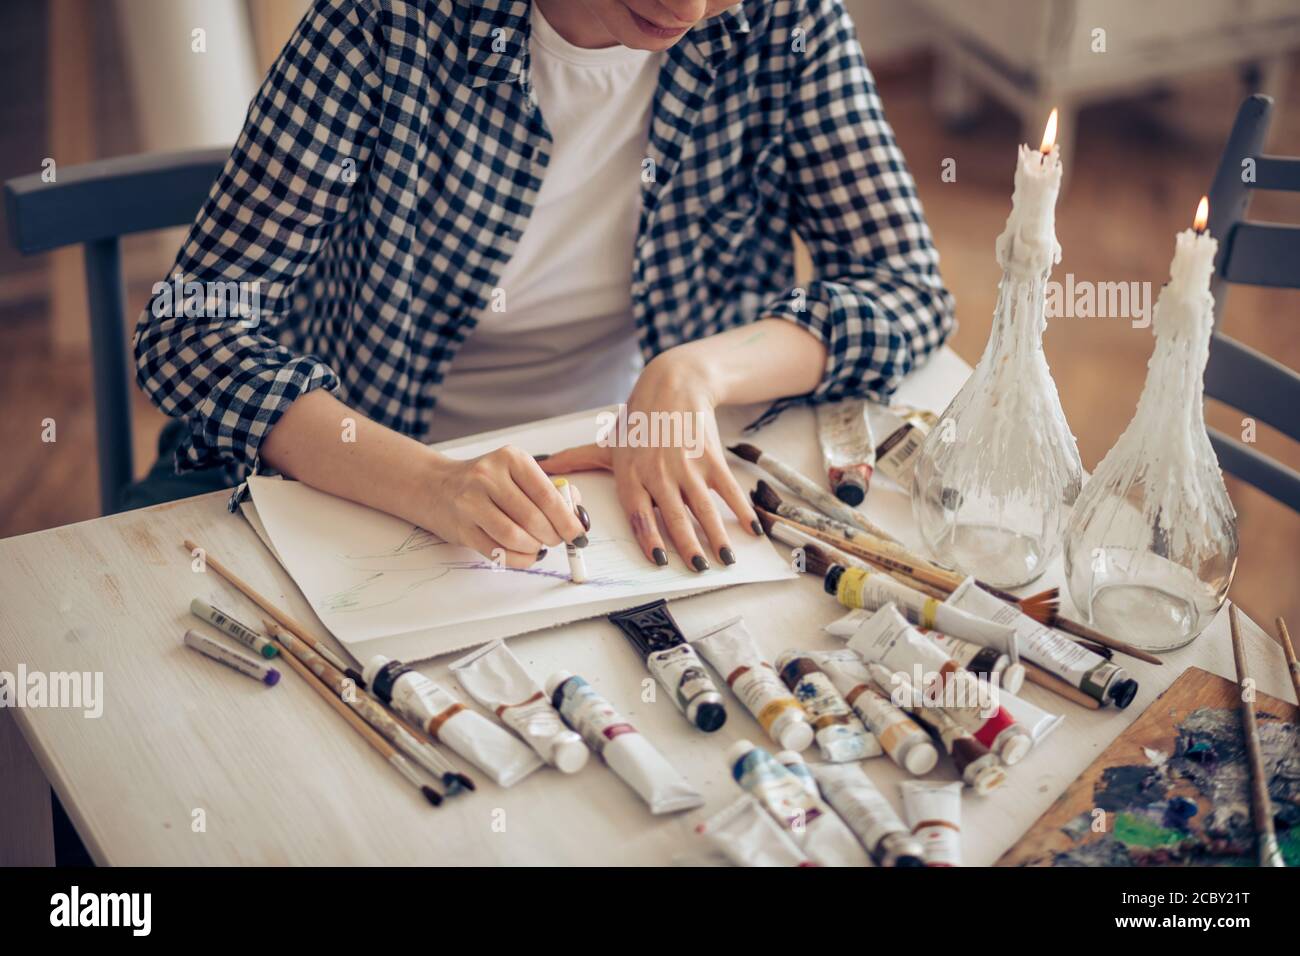 primo piano foto ritagliata. le mani di una giovane donna tengono il pastello e disegnano qualcosa sulla carta sul tavolo con diversi strumenti dell'artista Foto Stock